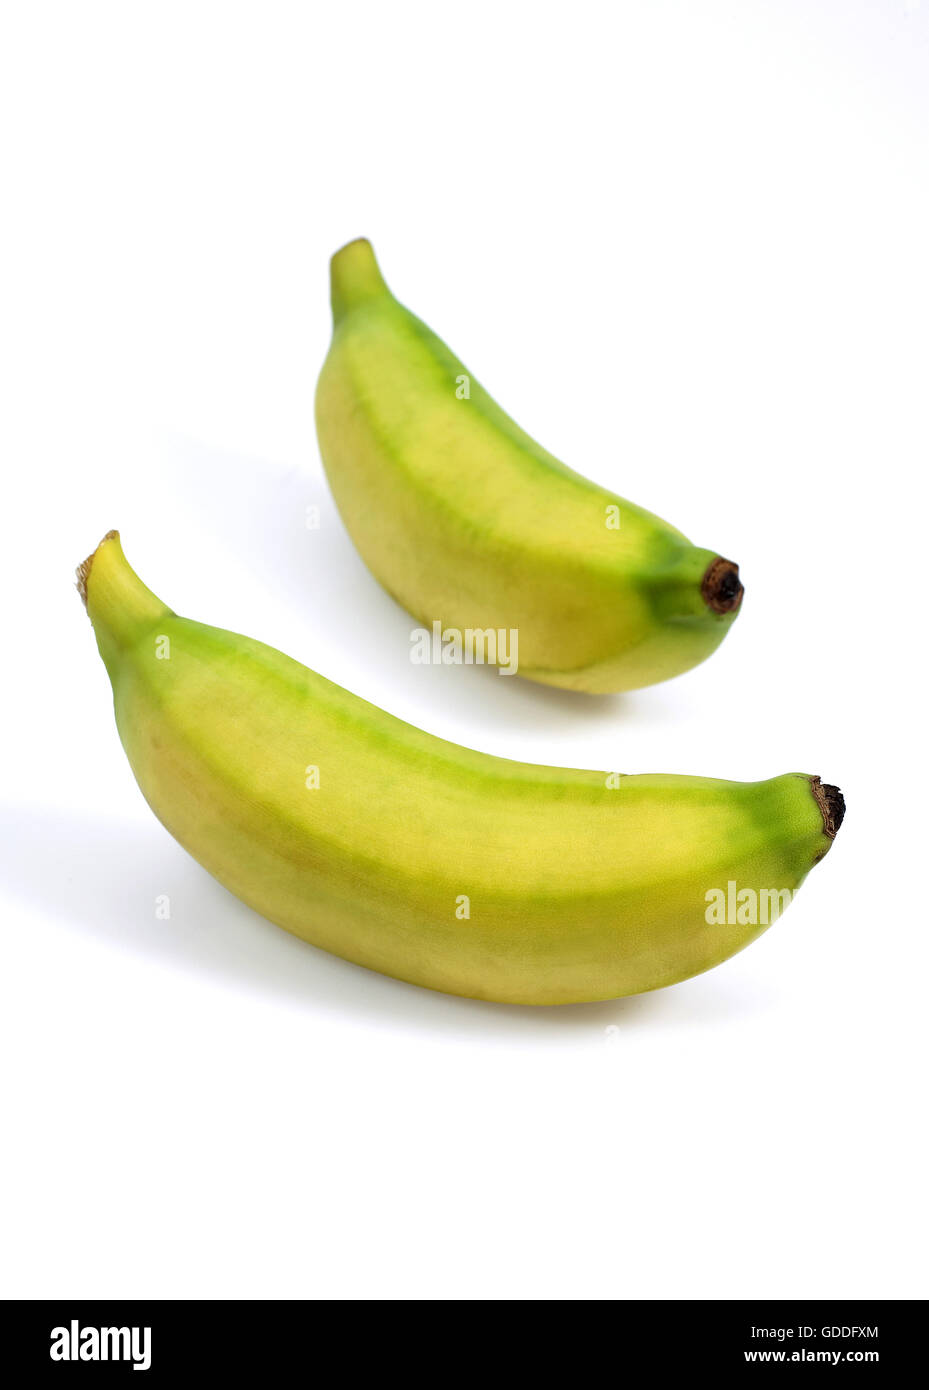 Banane auf weißen Hintergrund Stockfoto